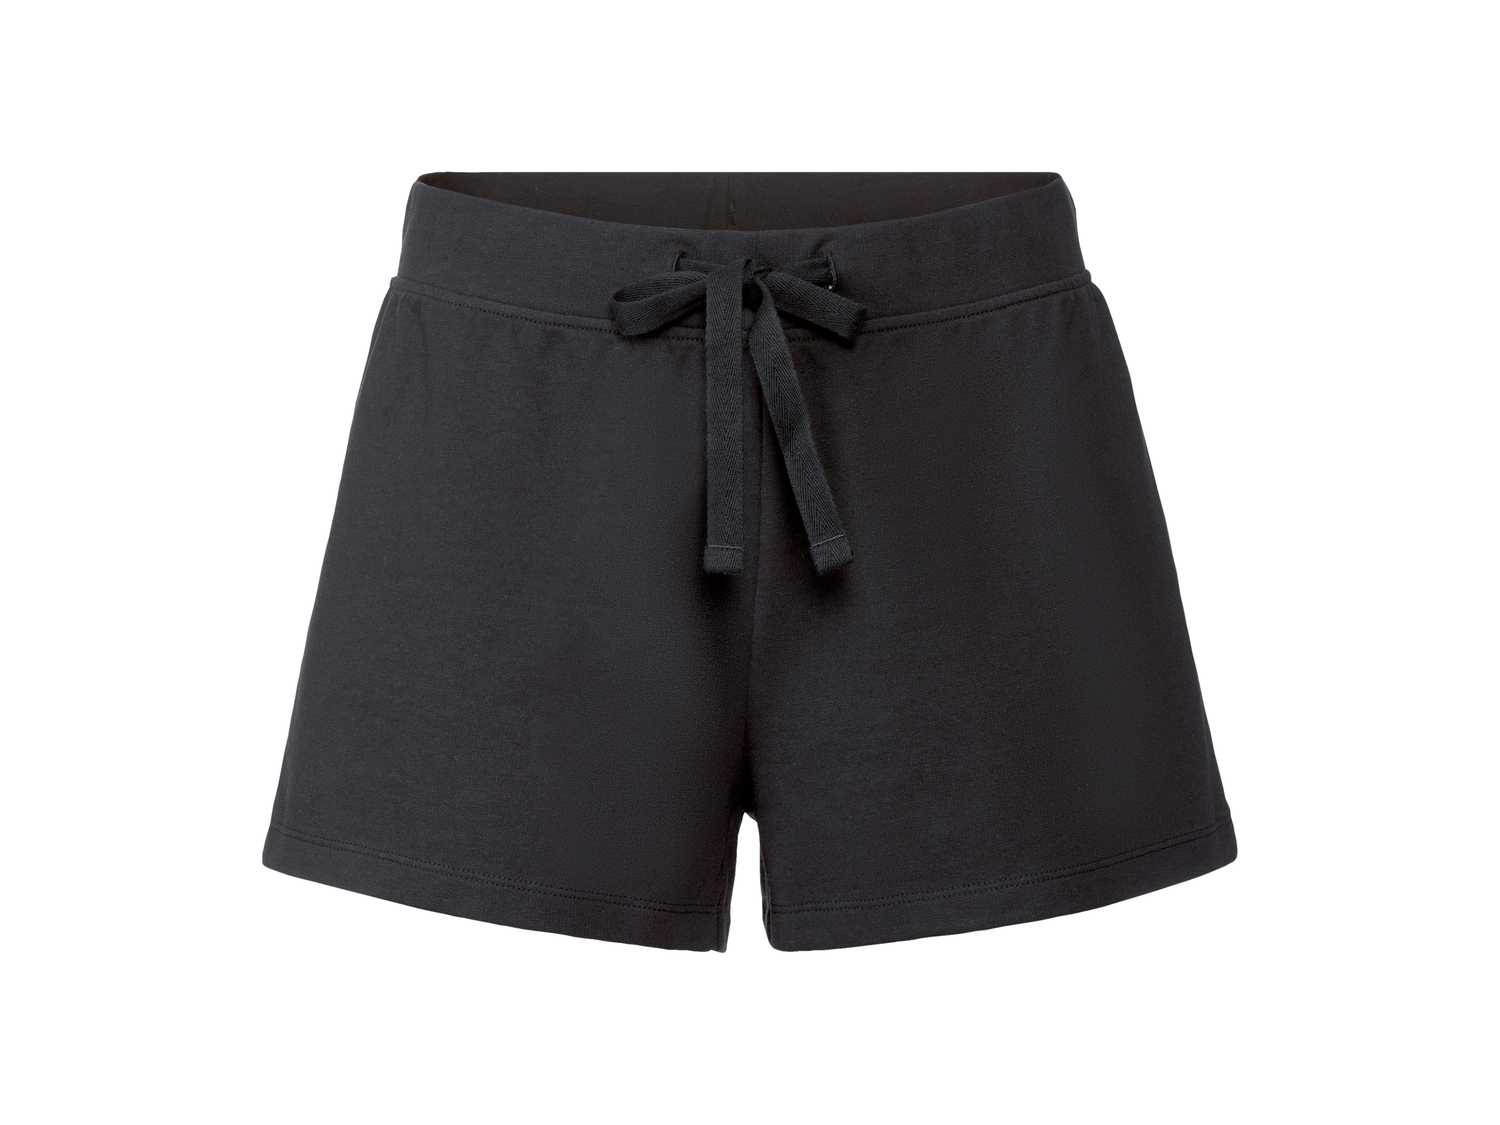 Shorts da donna Esmara, prezzo 3.99 &#8364; 
Misure: S-L
Taglie disponibili

Caratteristiche

- ...